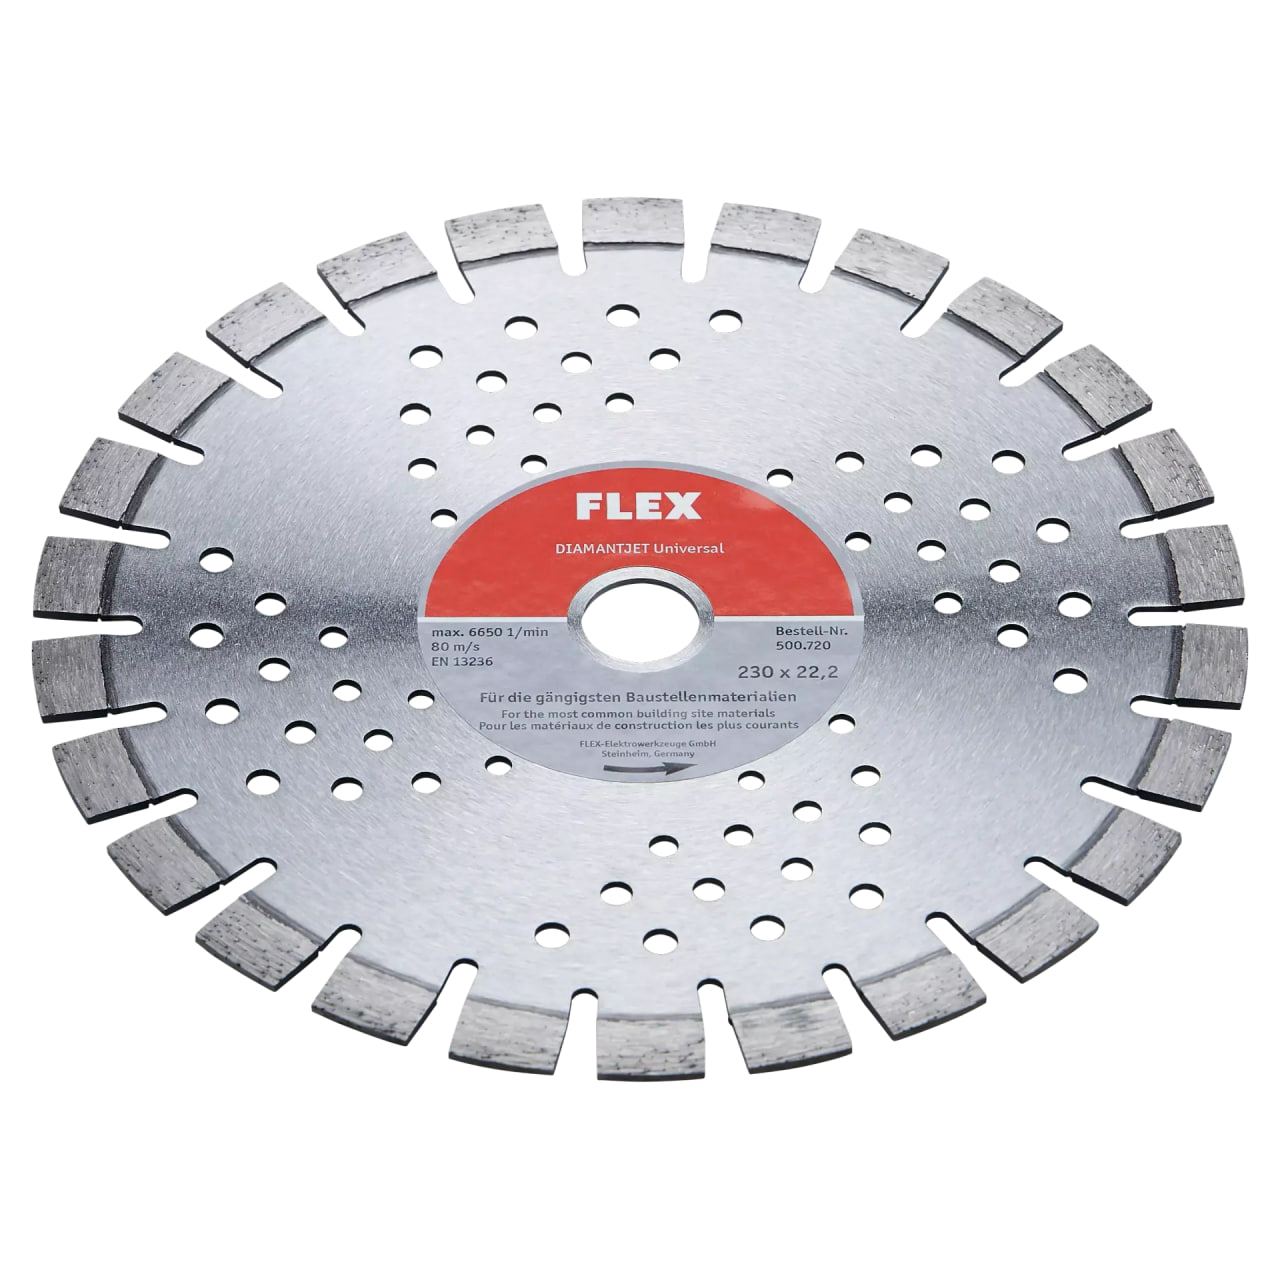 Алмазный отрезной диск, универсальный Flex D-TCS U 230x22,2, 500720 диск отрезной алмазный универсальный hammer flex 206 103 db sg 30687